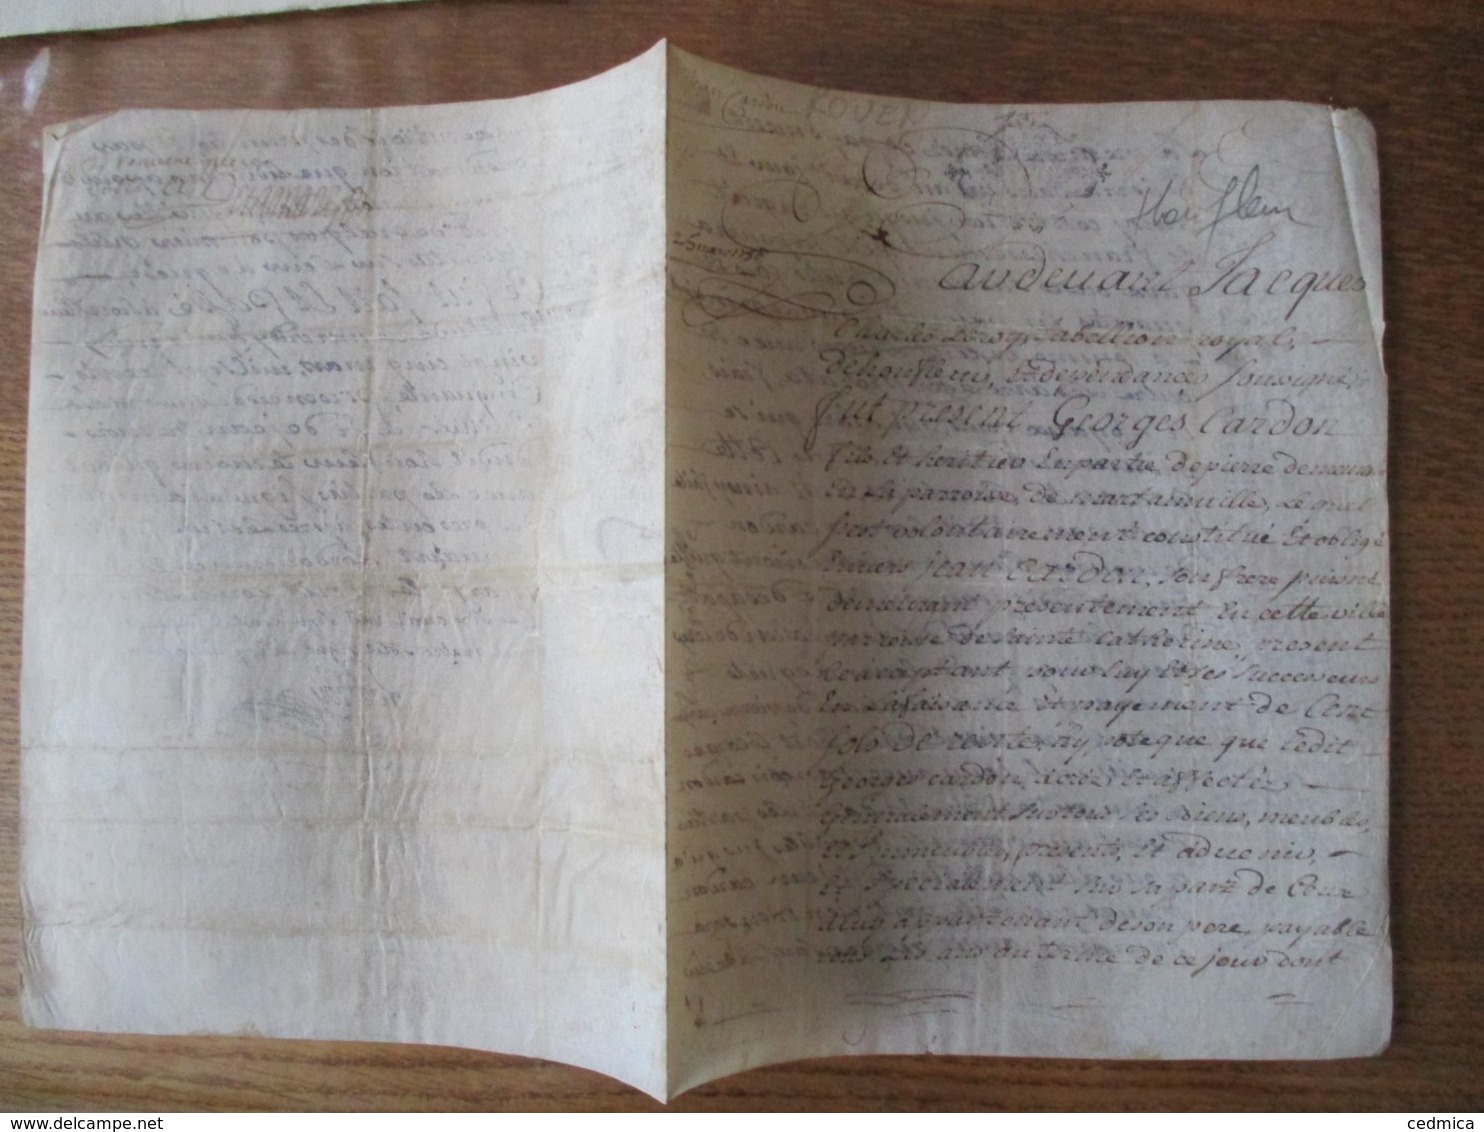 HONFLEUR LE 25 MARS 1750 PARCHEMIN GEORGES CARDON FILS ET HERITIER D PIERRE DEMEURANT EN LA PAROISSE DE MARTINVILLE ET - Manuscripts